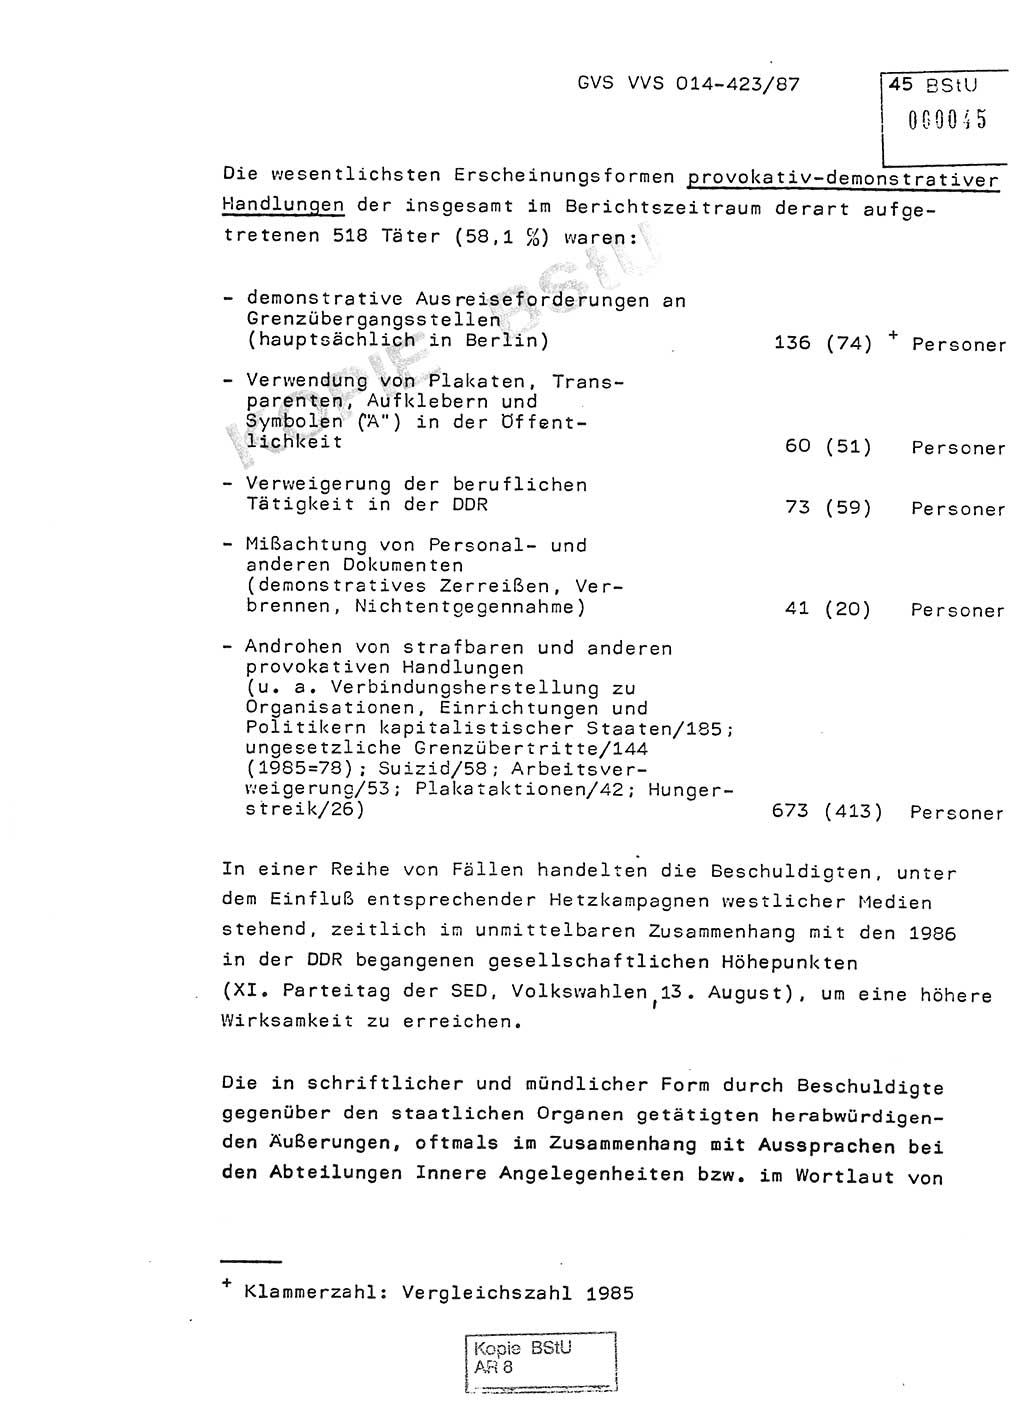 Jahresbericht der Hauptabteilung (HA) Ⅸ 1986, Einschätzung der Wirksamkeit der Untersuchungsarbeit im Jahre 1986, Ministerium für Staatssicherheit (MfS) der Deutschen Demokratischen Republik (DDR), Hauptabteilung Ⅸ, Geheime Verschlußsache (GVS) o014-423/87, Berlin 1987, Seite 45 (Einsch. MfS DDR HA Ⅸ GVS o014-423/87 1986, S. 45)